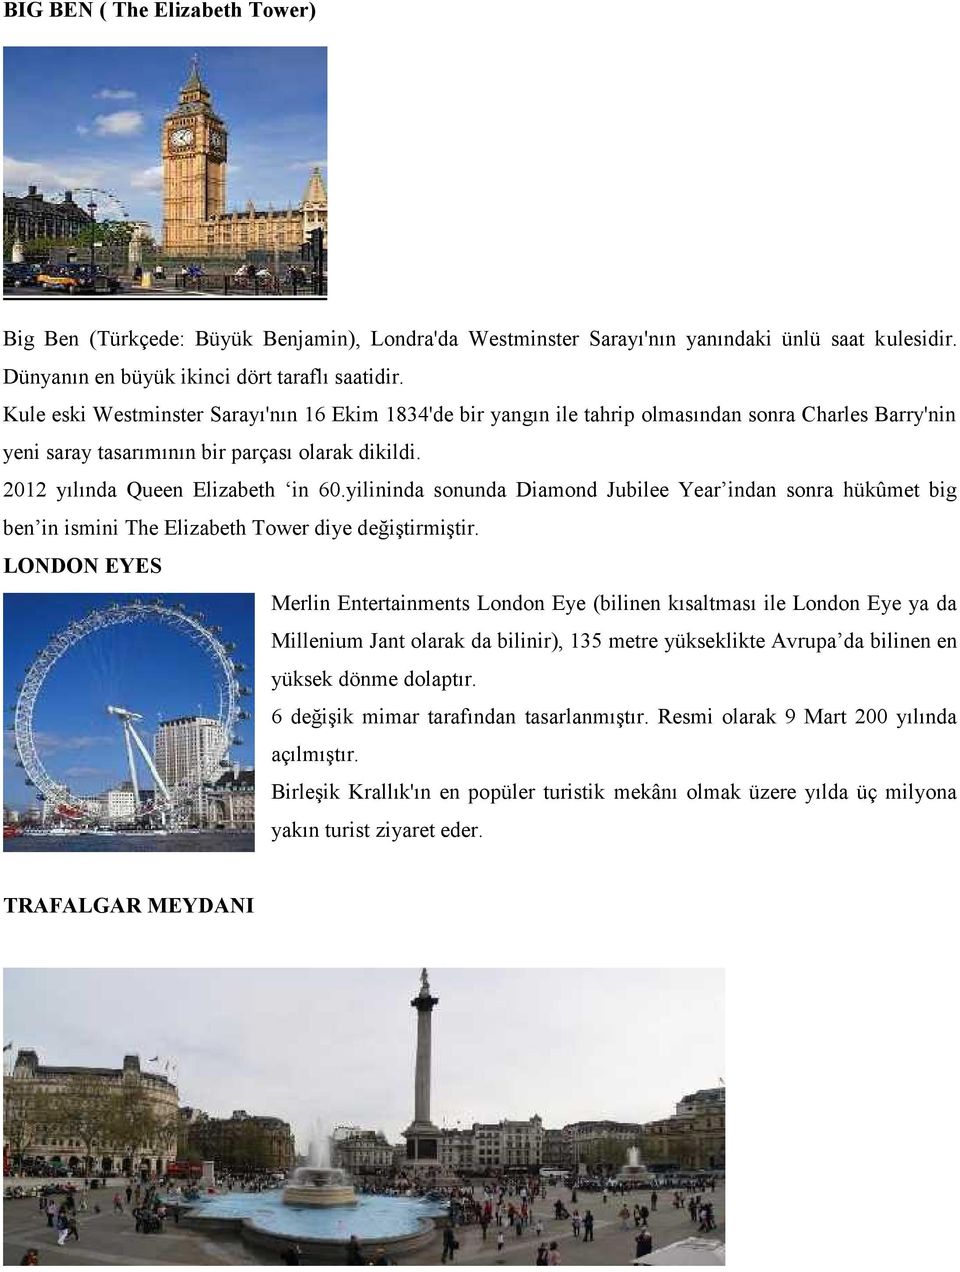 yilininda sonunda Diamond Jubilee Year indan sonra hükûmet big ben in ismini The Elizabeth Tower diye değiştirmiştir.